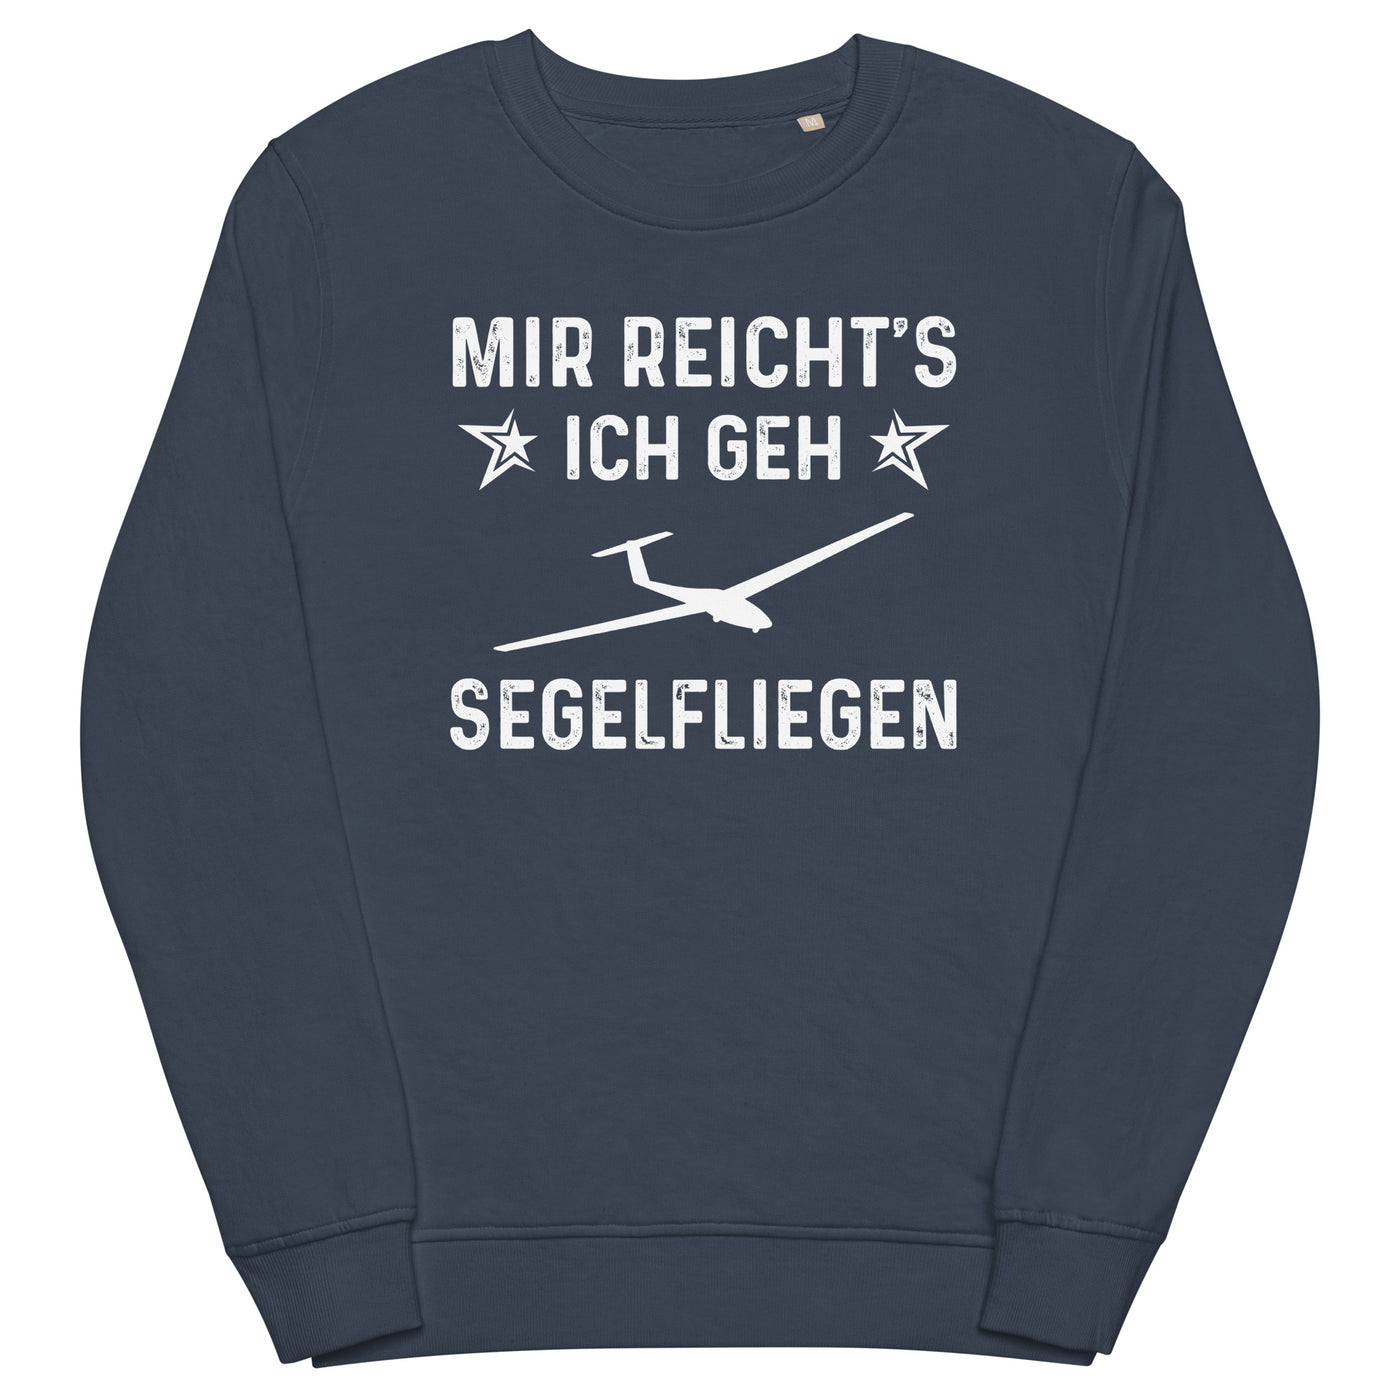 Mir Reicht's Ich Gen Segelfliegen - Unisex Premium Organic Sweatshirt berge xxx yyy zzz French Navy